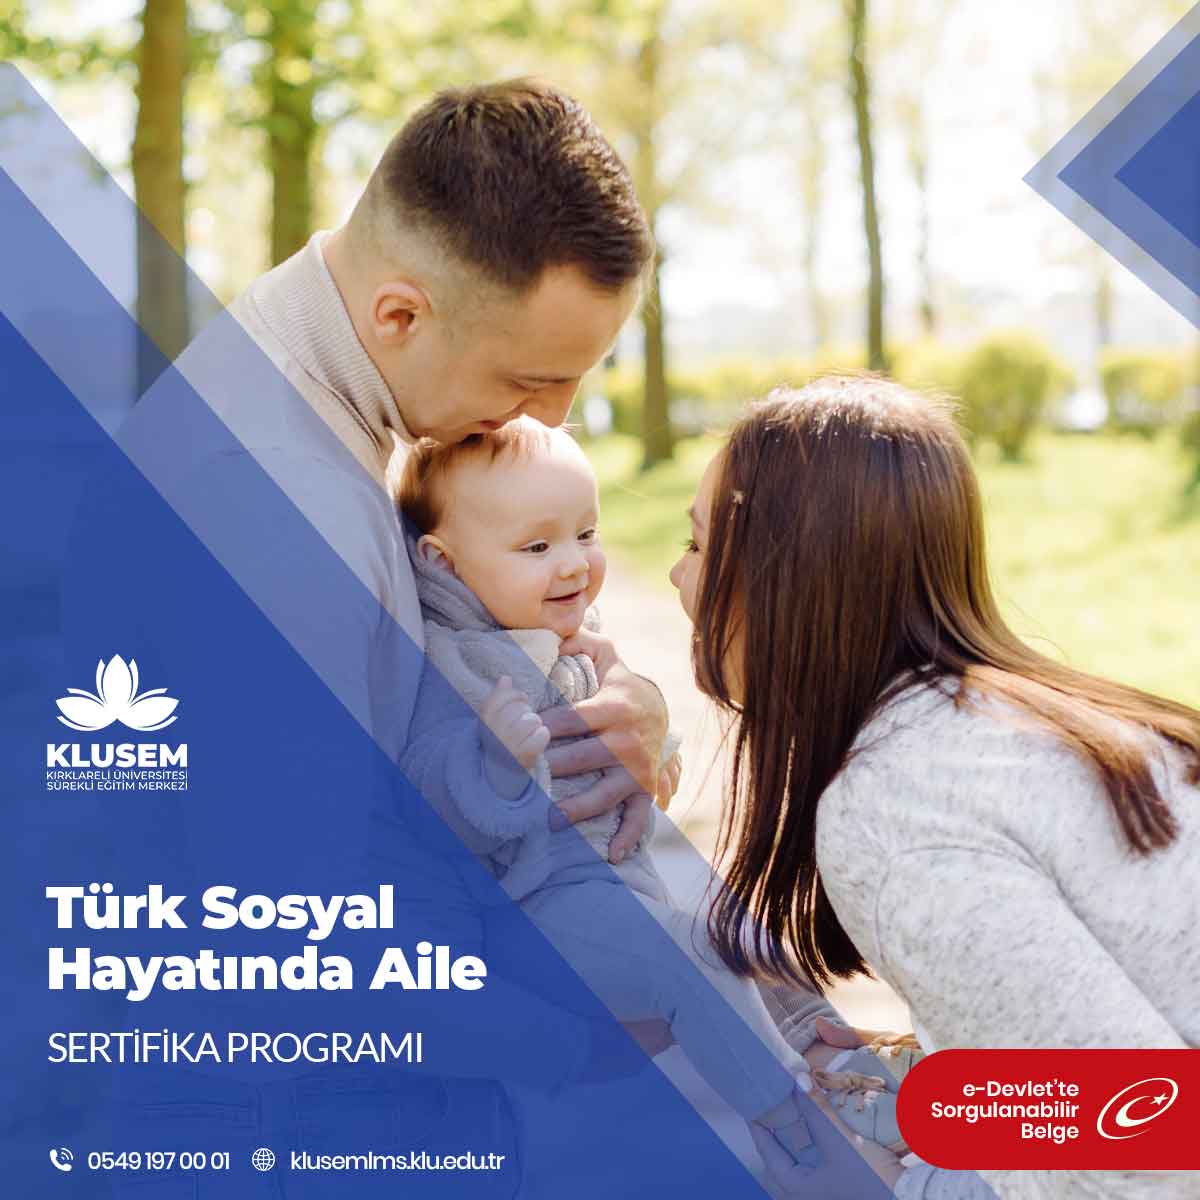 Türk kültüründe aile kavramı, sadece biyolojik bağlarla sınırlı kalmaz, aynı zamanda duygusal ve sosyal bağları da içerir.